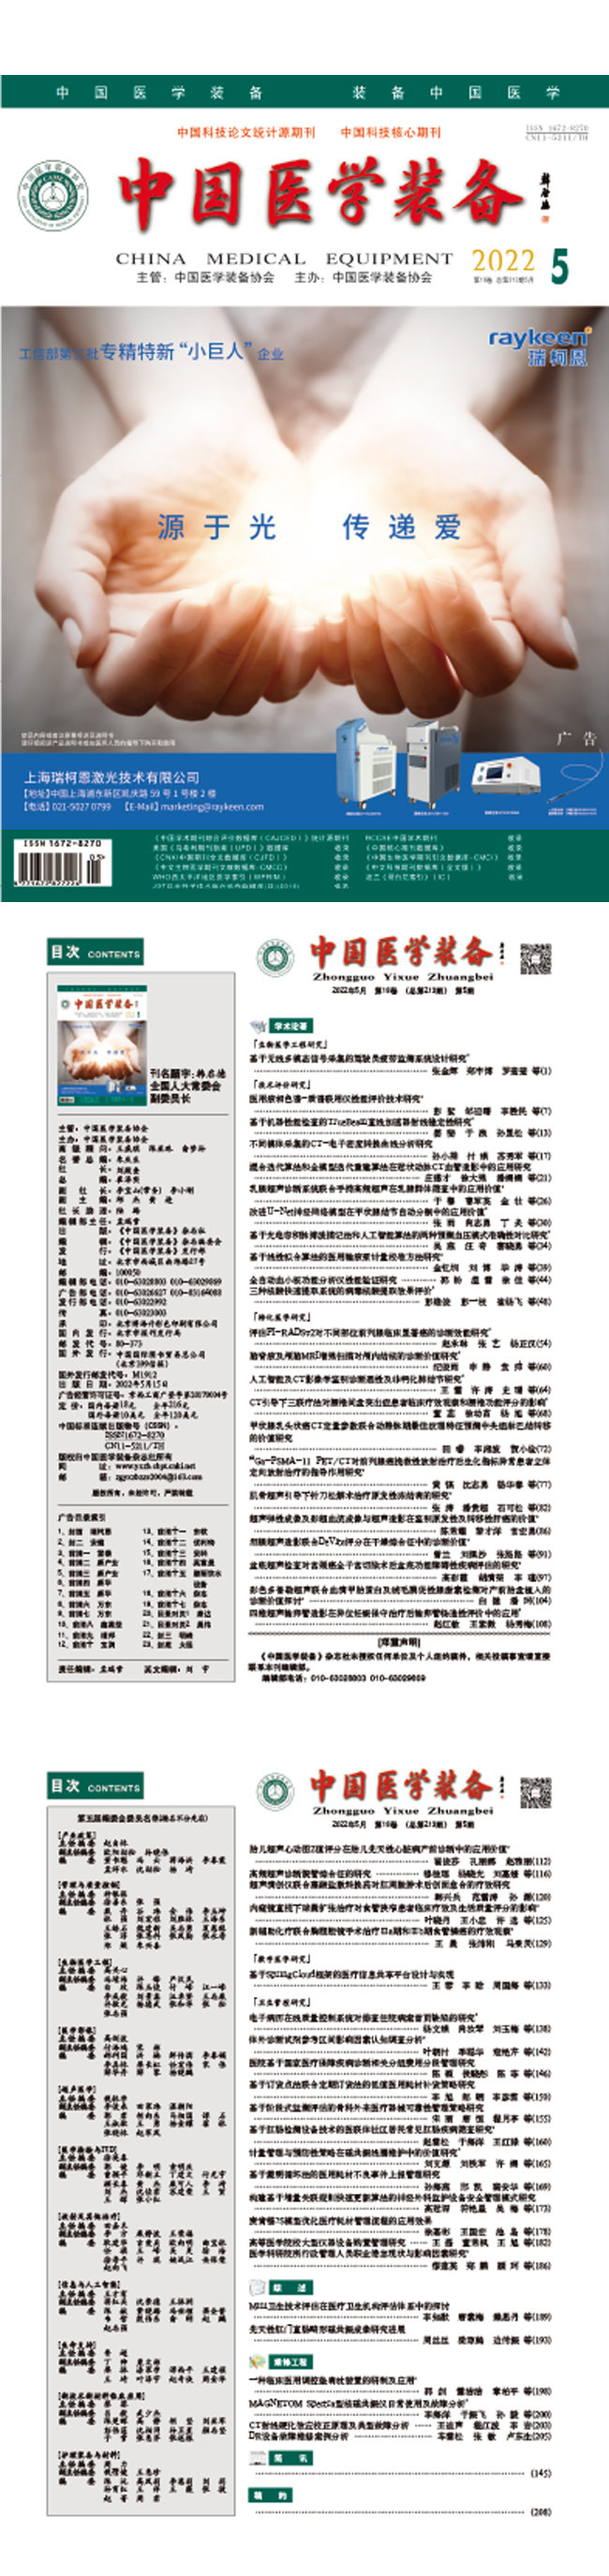 《中国医学装备》2022年5期出版(图1)